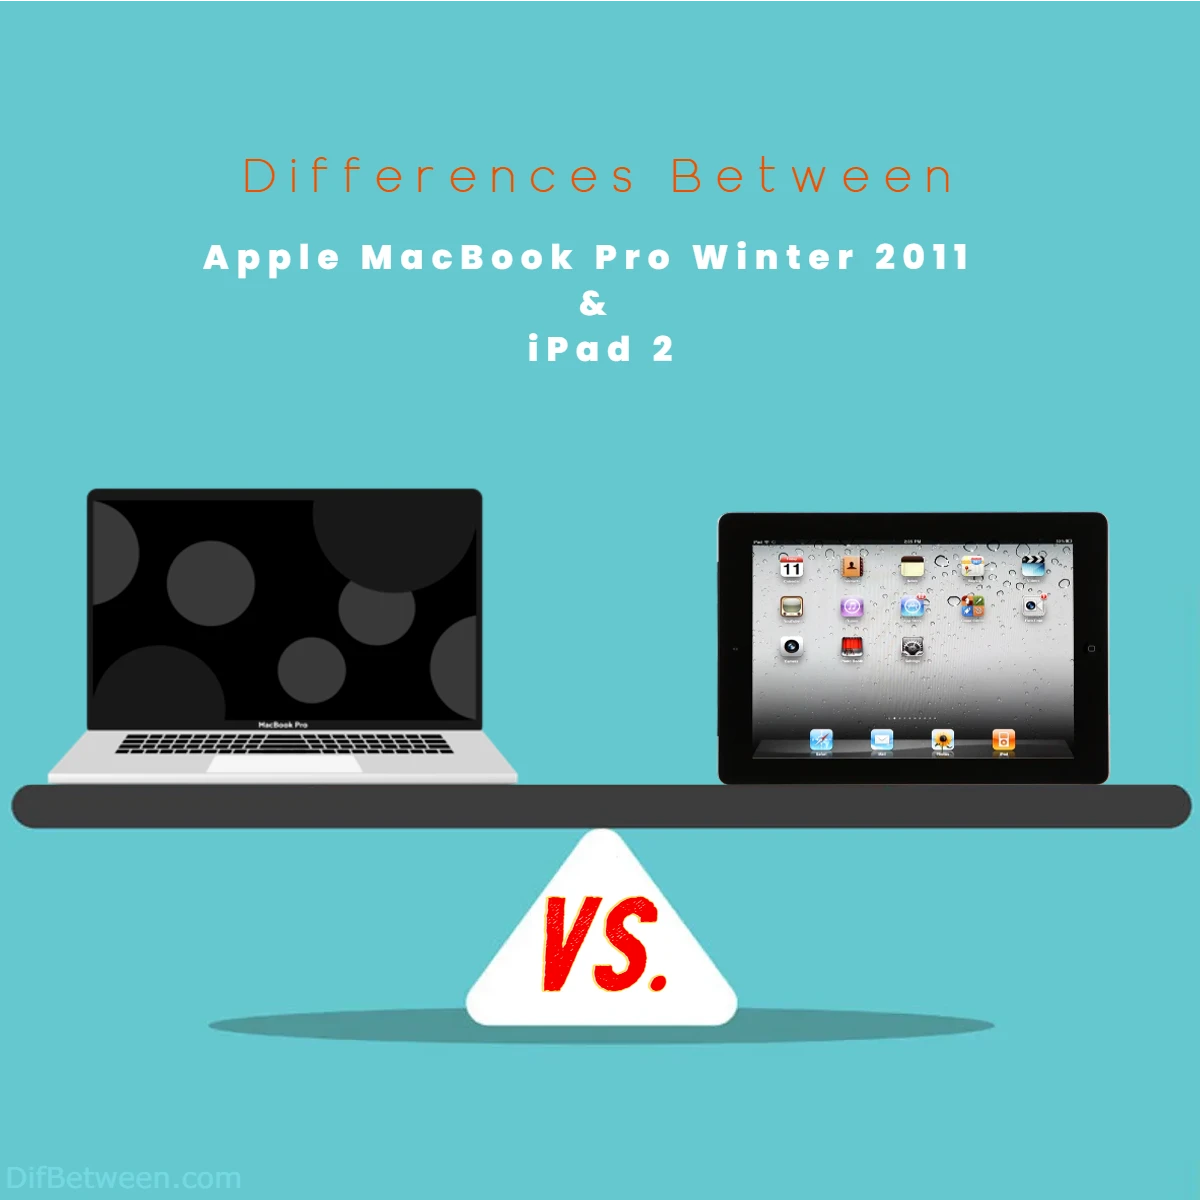 Differences Between Apple MacBook Pro Winter 2011 vs iPad 2